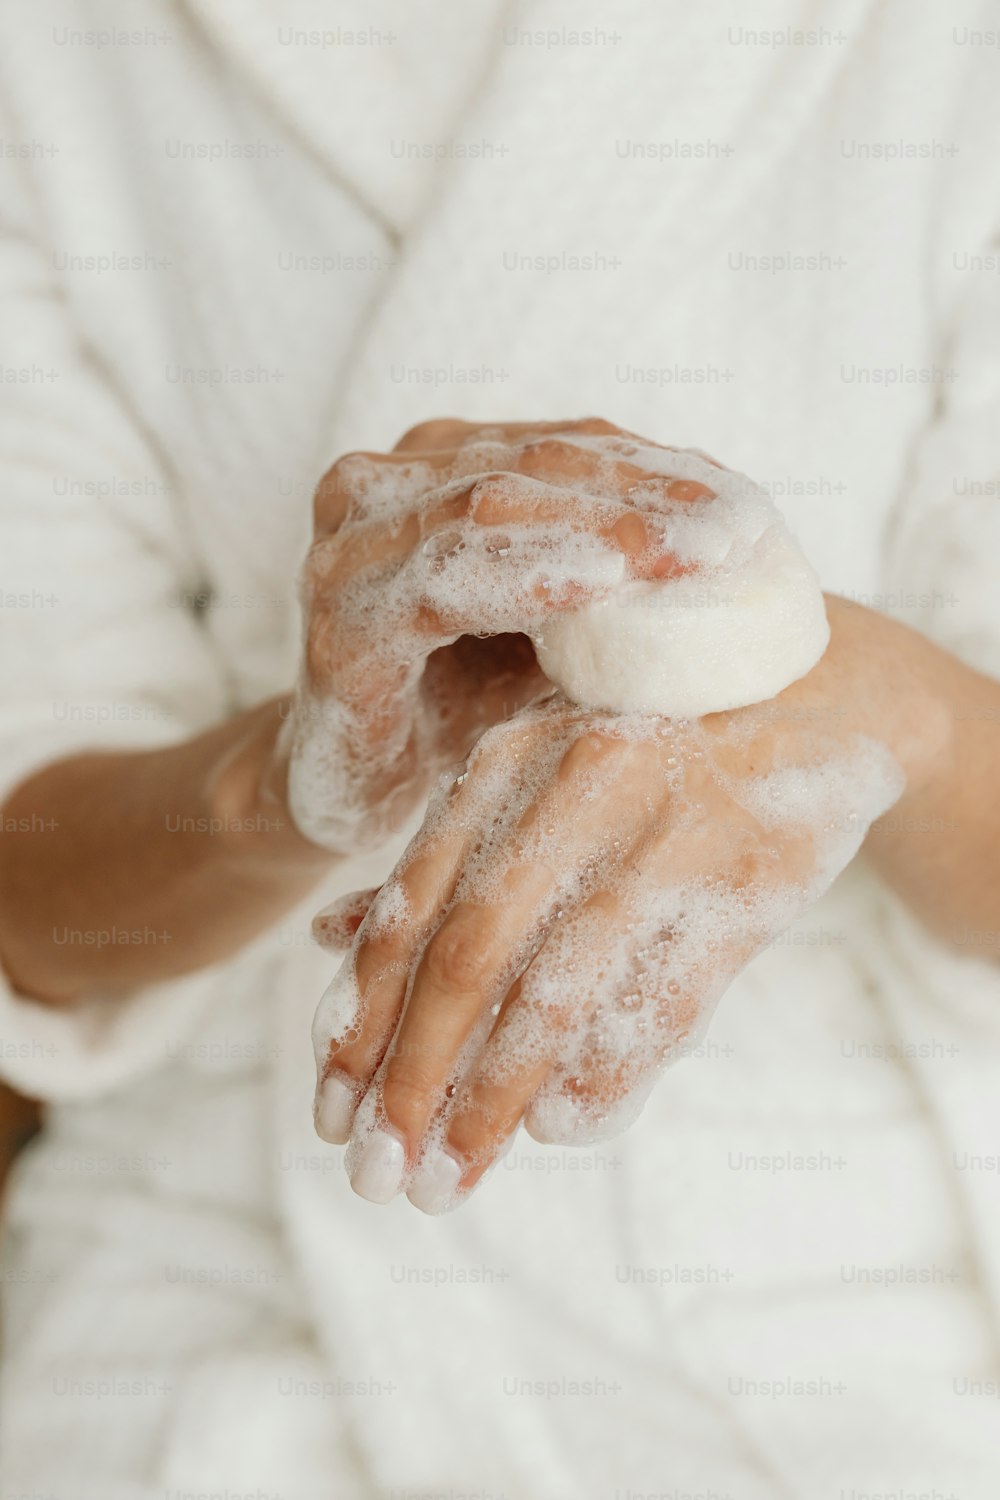 uma pessoa está coberta de espuma e segurando algo em suas mãos